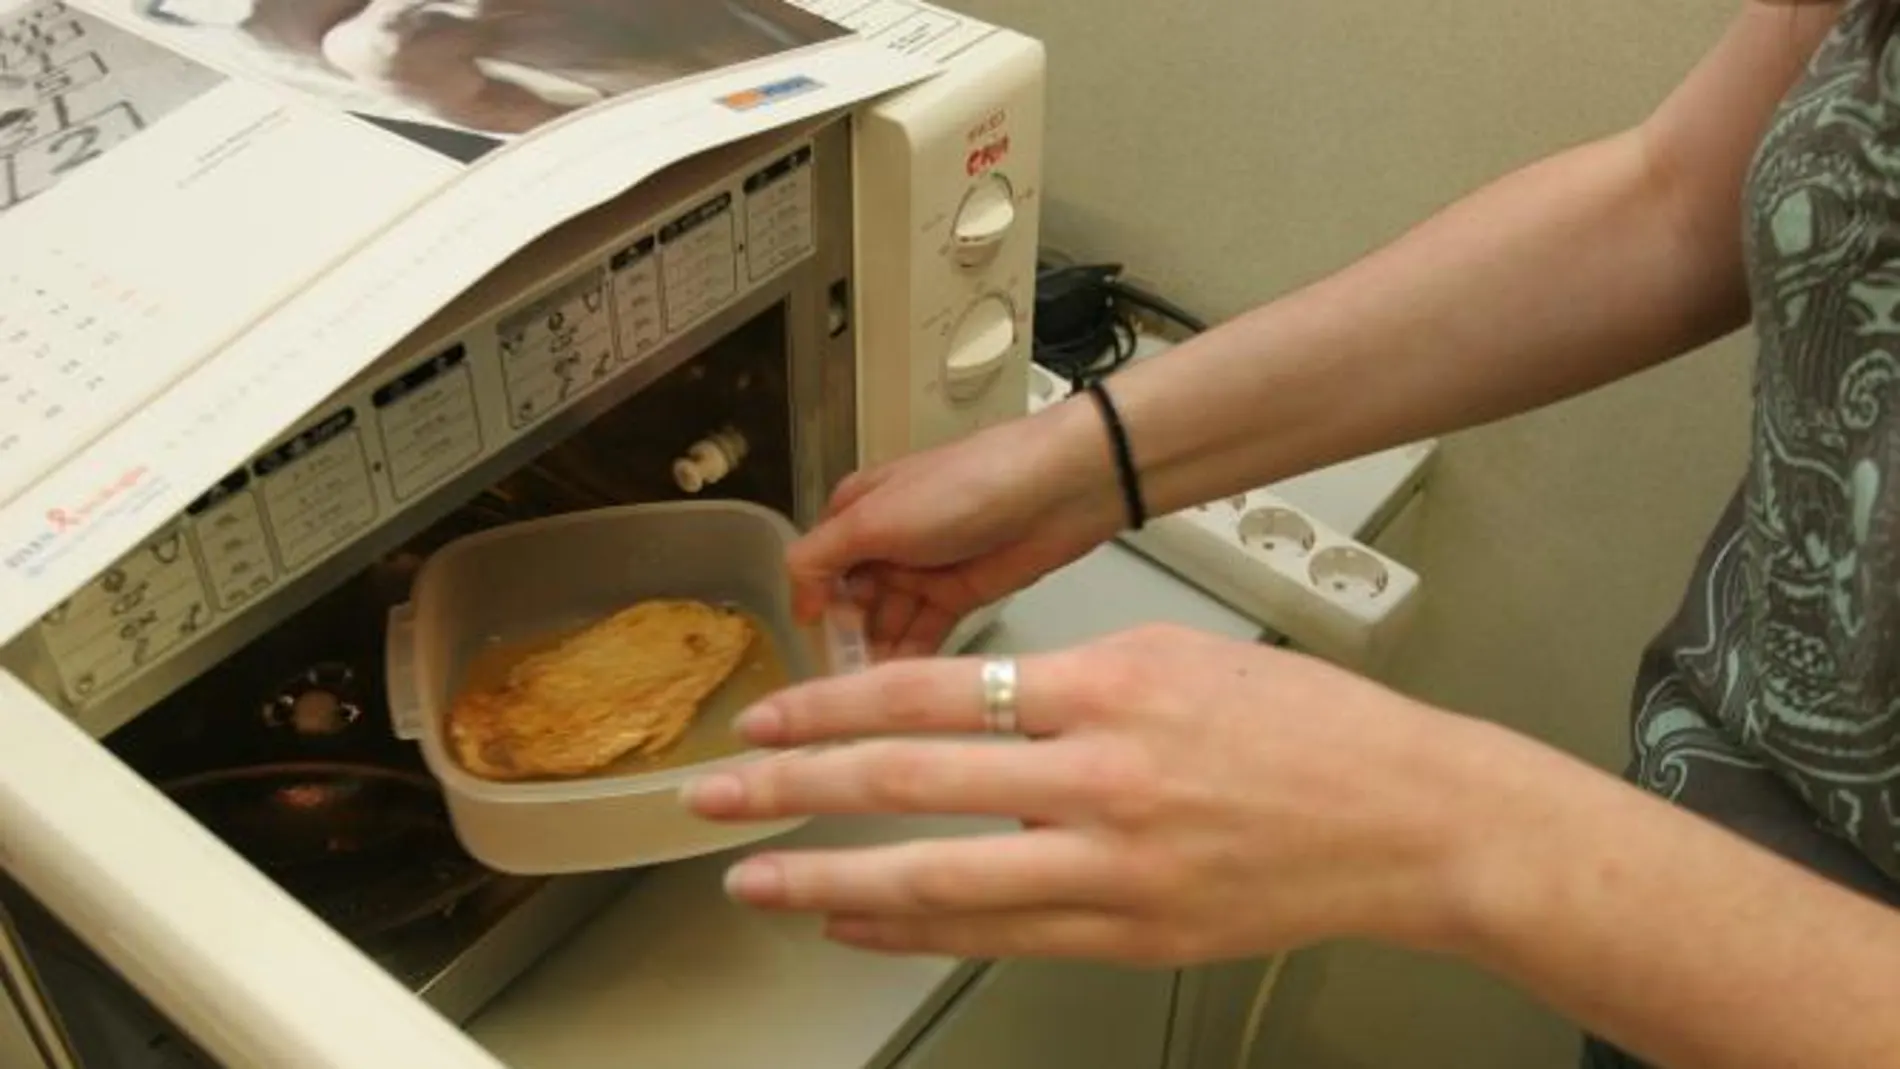 El sistema de calentamiento empleado con el microondas protege la calidad de los alimentos de forma similar al vapor o a la plancha